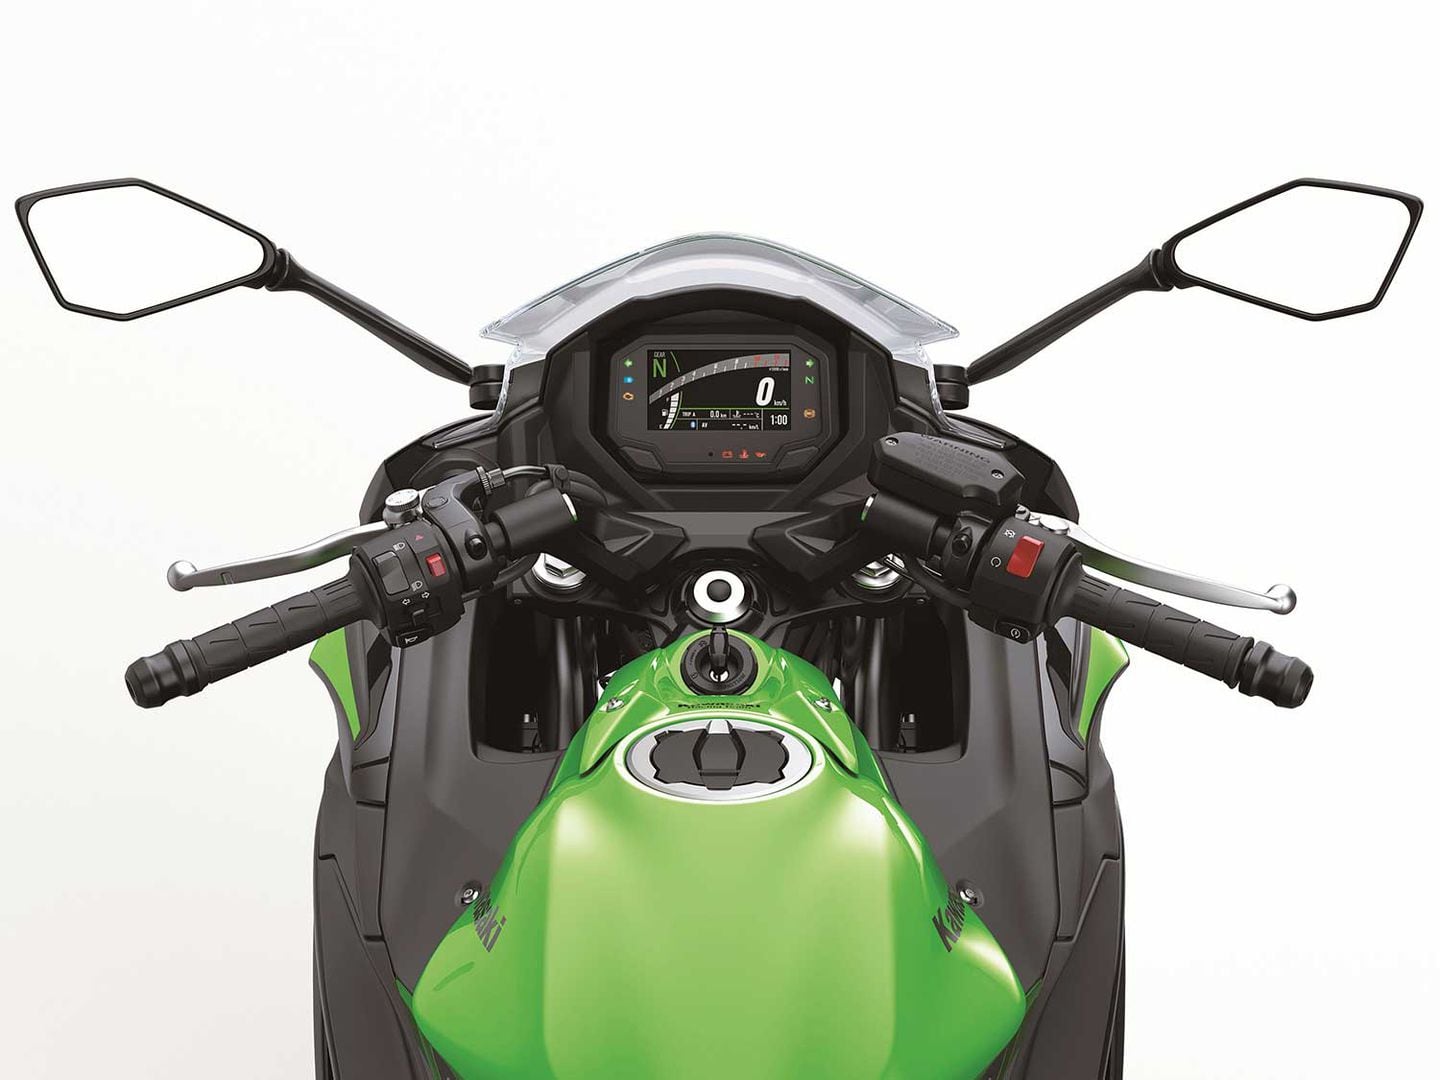 2020 Kawasaki Ninja 650 First Look | Motorcyclist